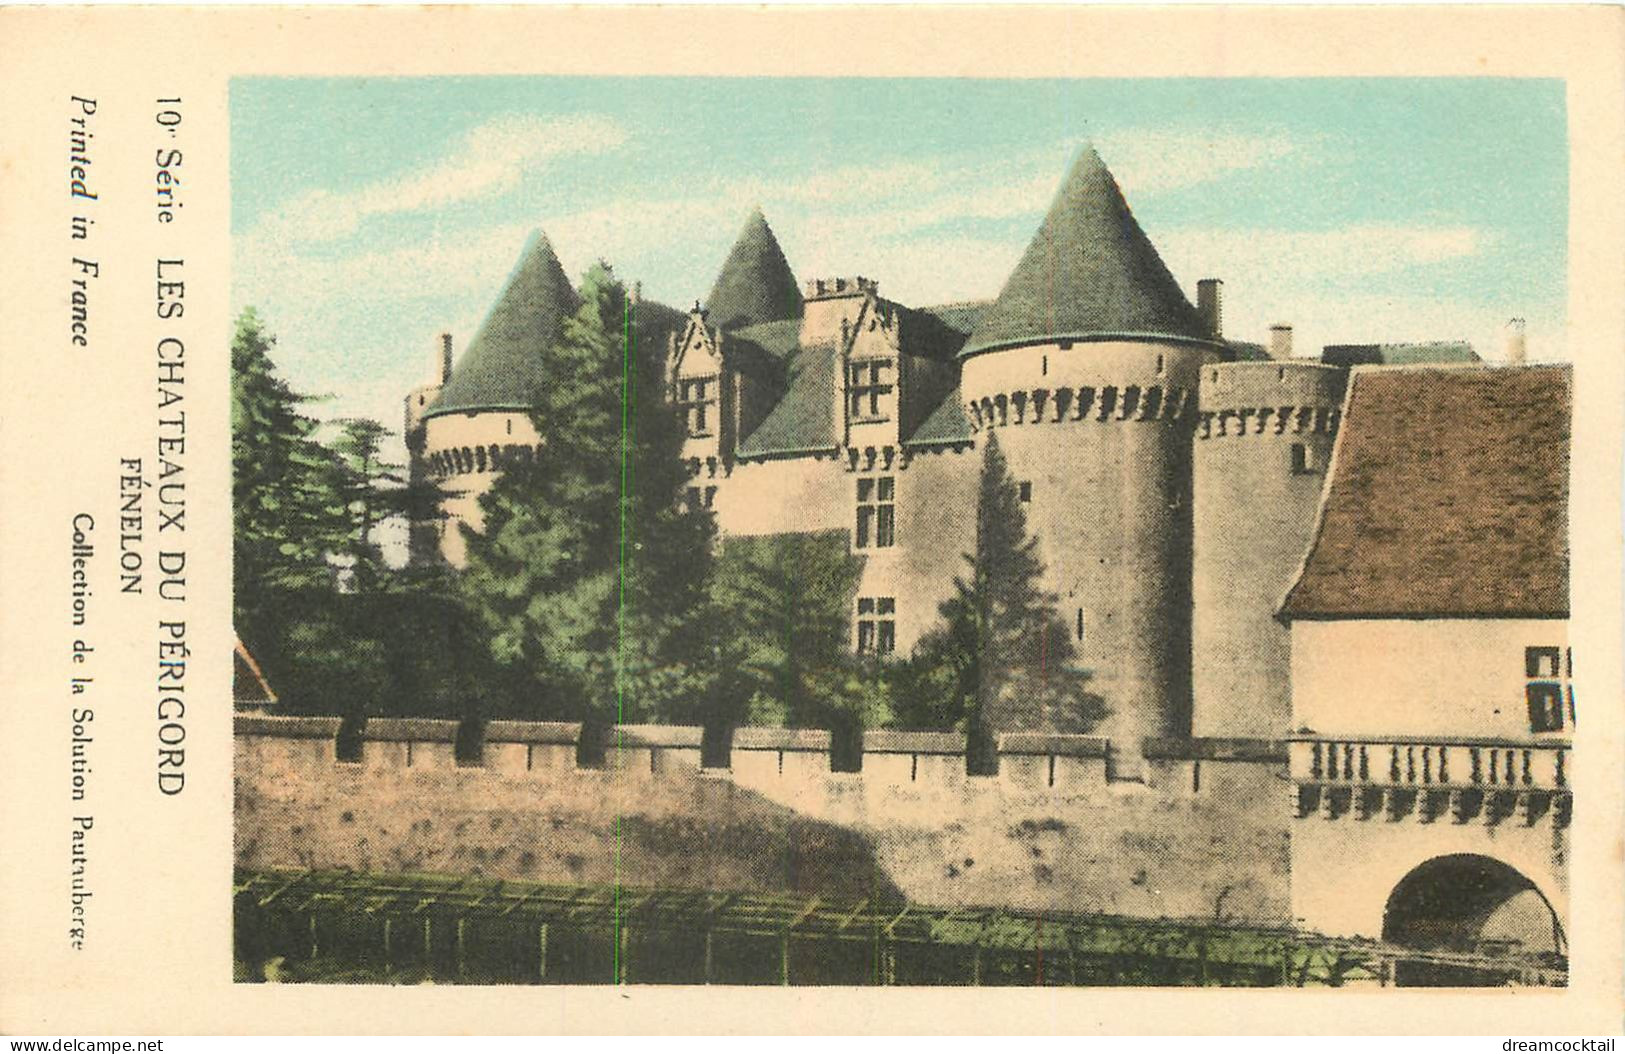 (S) 24 DORDOGNE. Lot de 10 cpa sur les Châteaux du Périgord avec note au verso